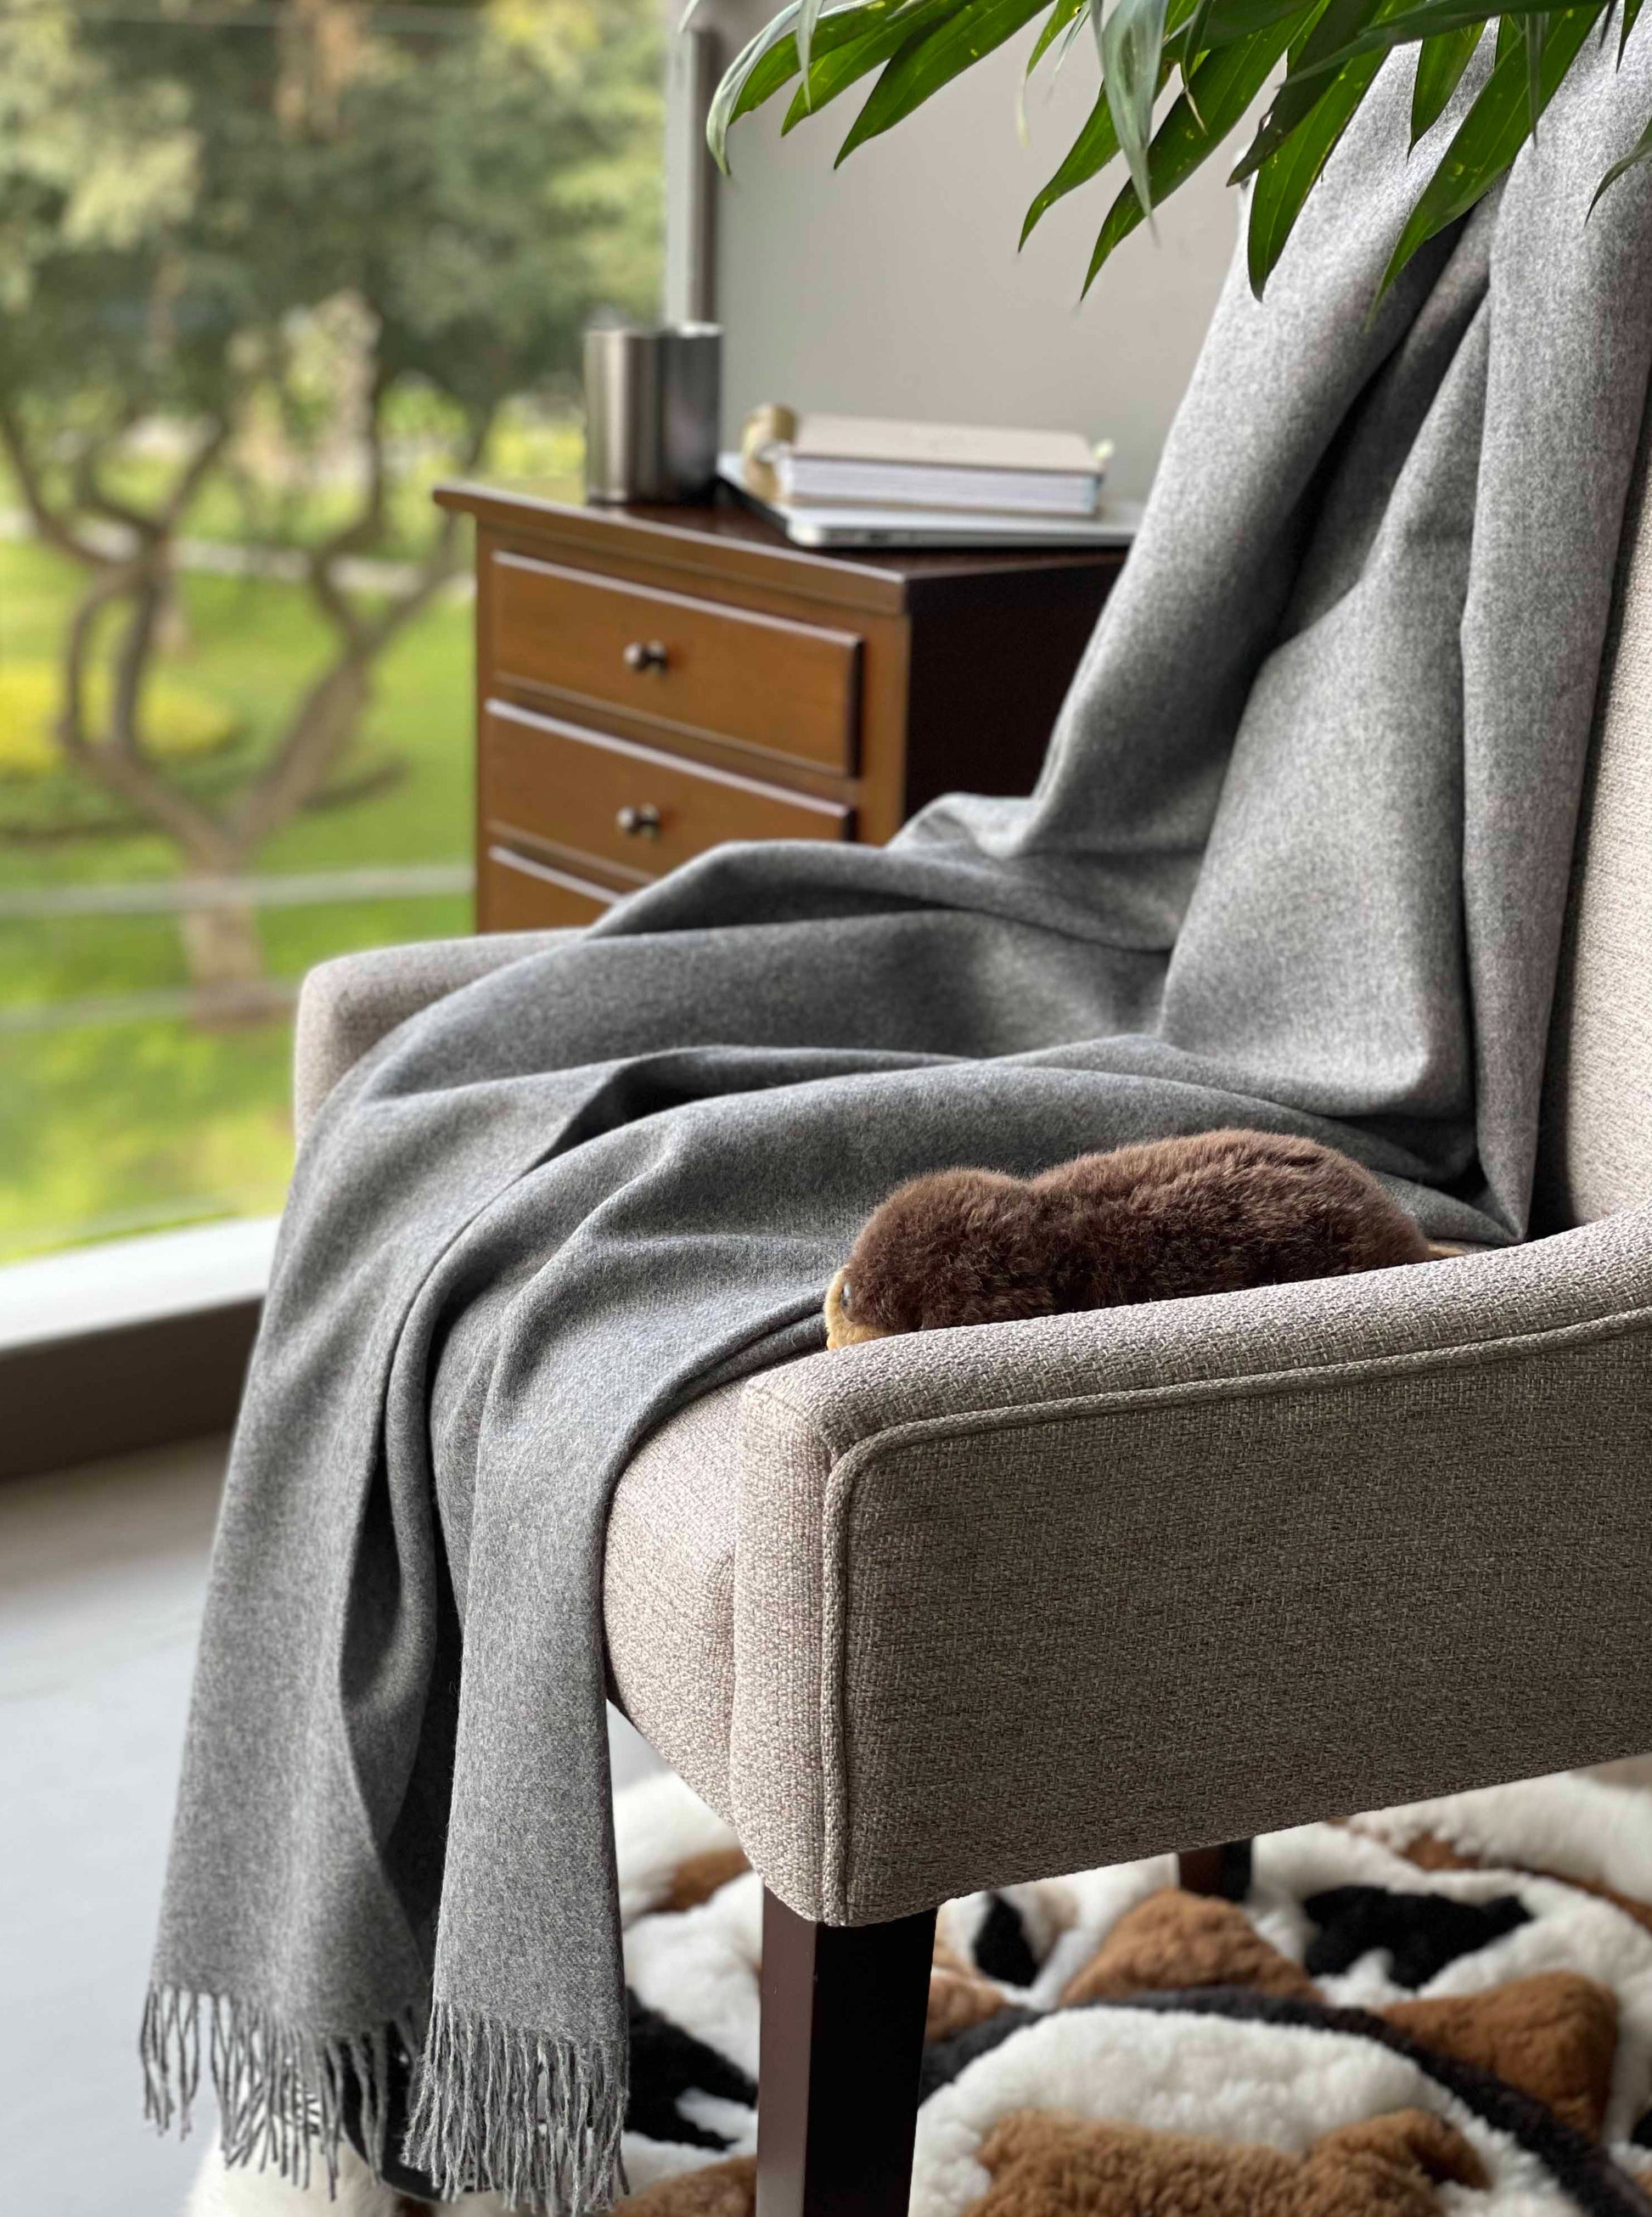 Blanket from alpaca wool in grey color